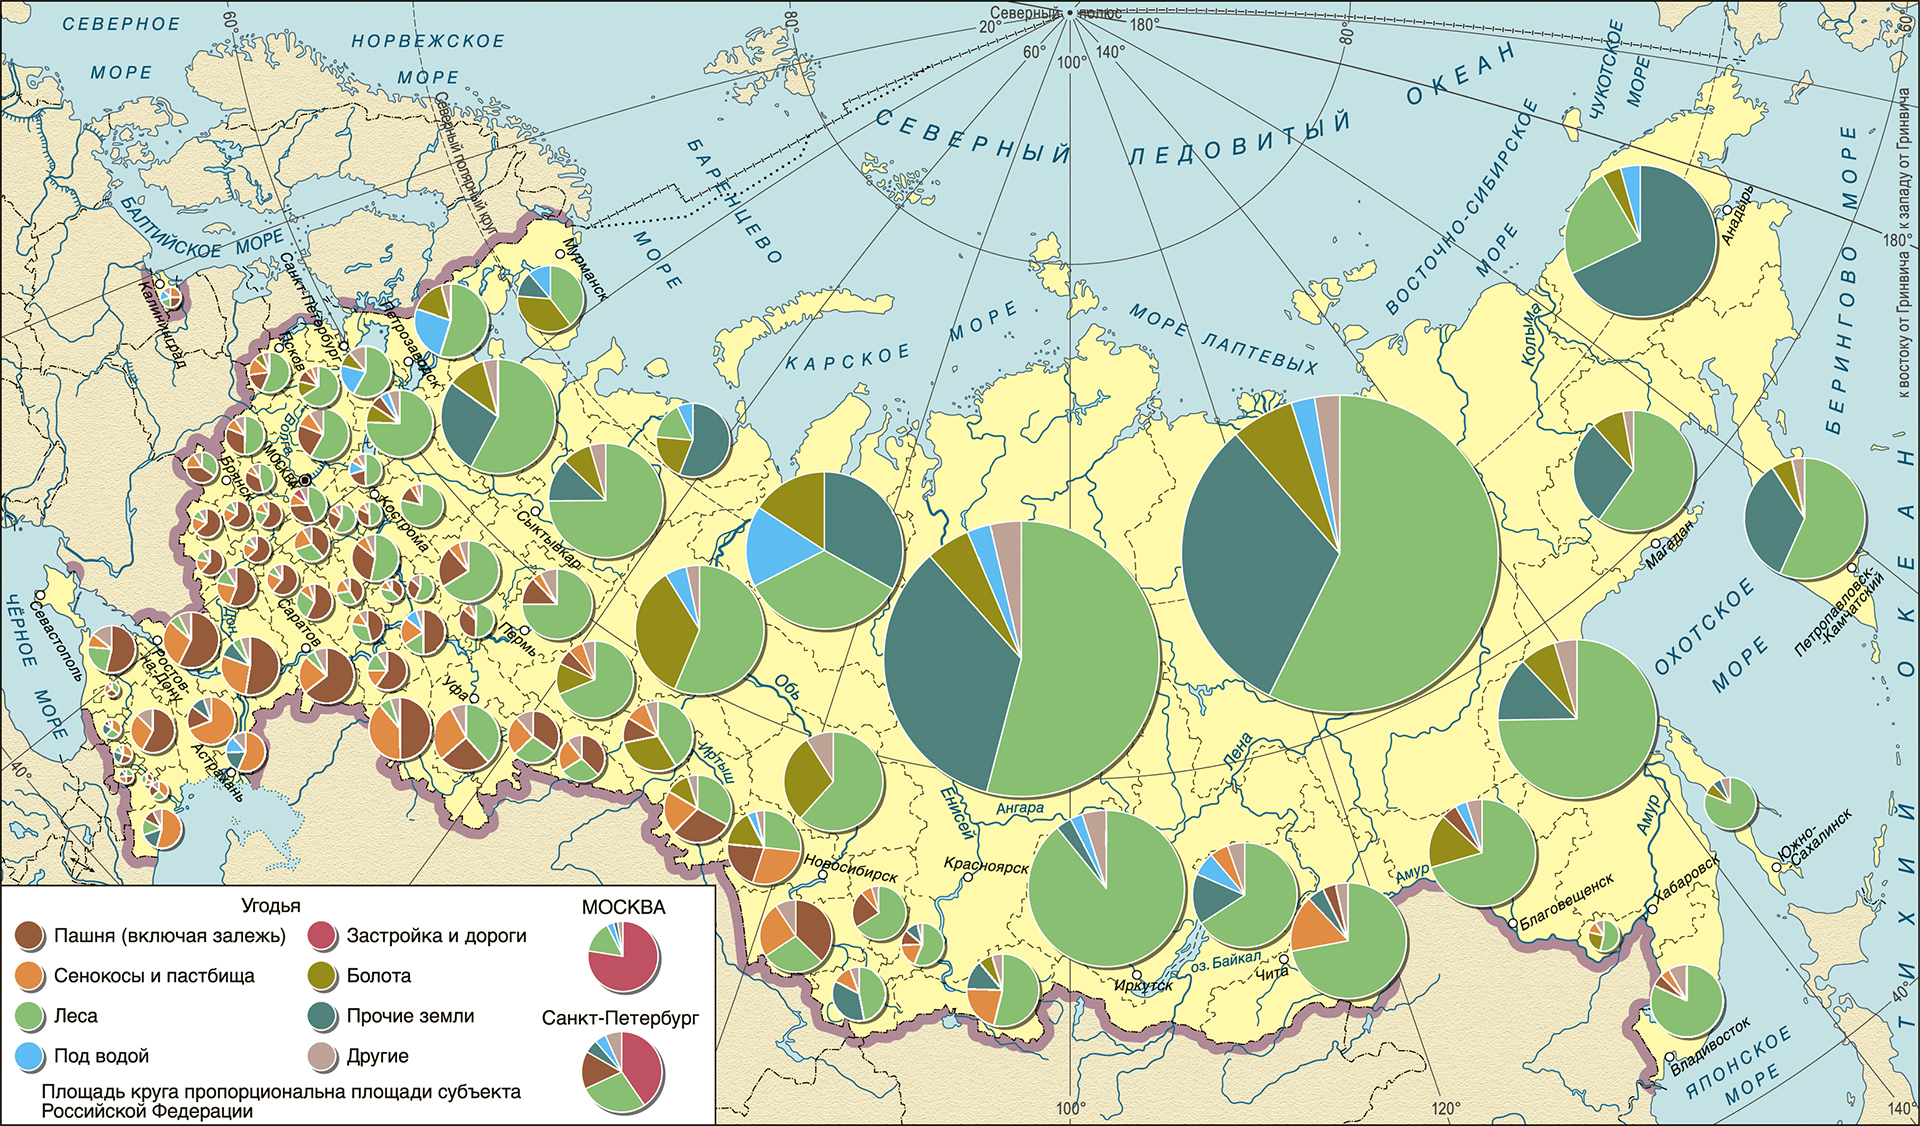  Структура земельных угодий регионов России 